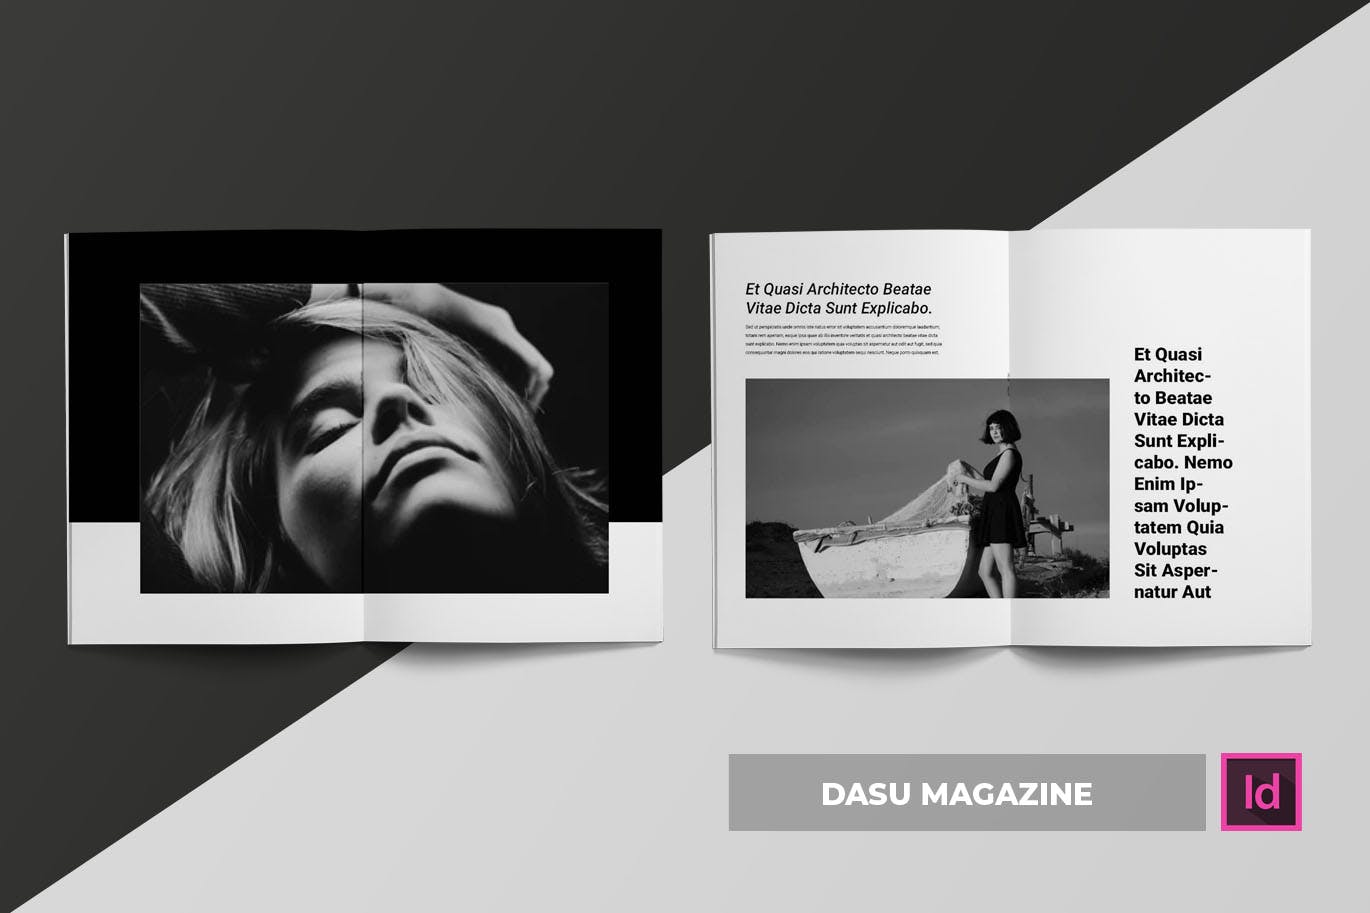 摄影艺术/时装设计主题第一素材精选杂志排版设计模板 Dasu | Magazine Template插图(1)